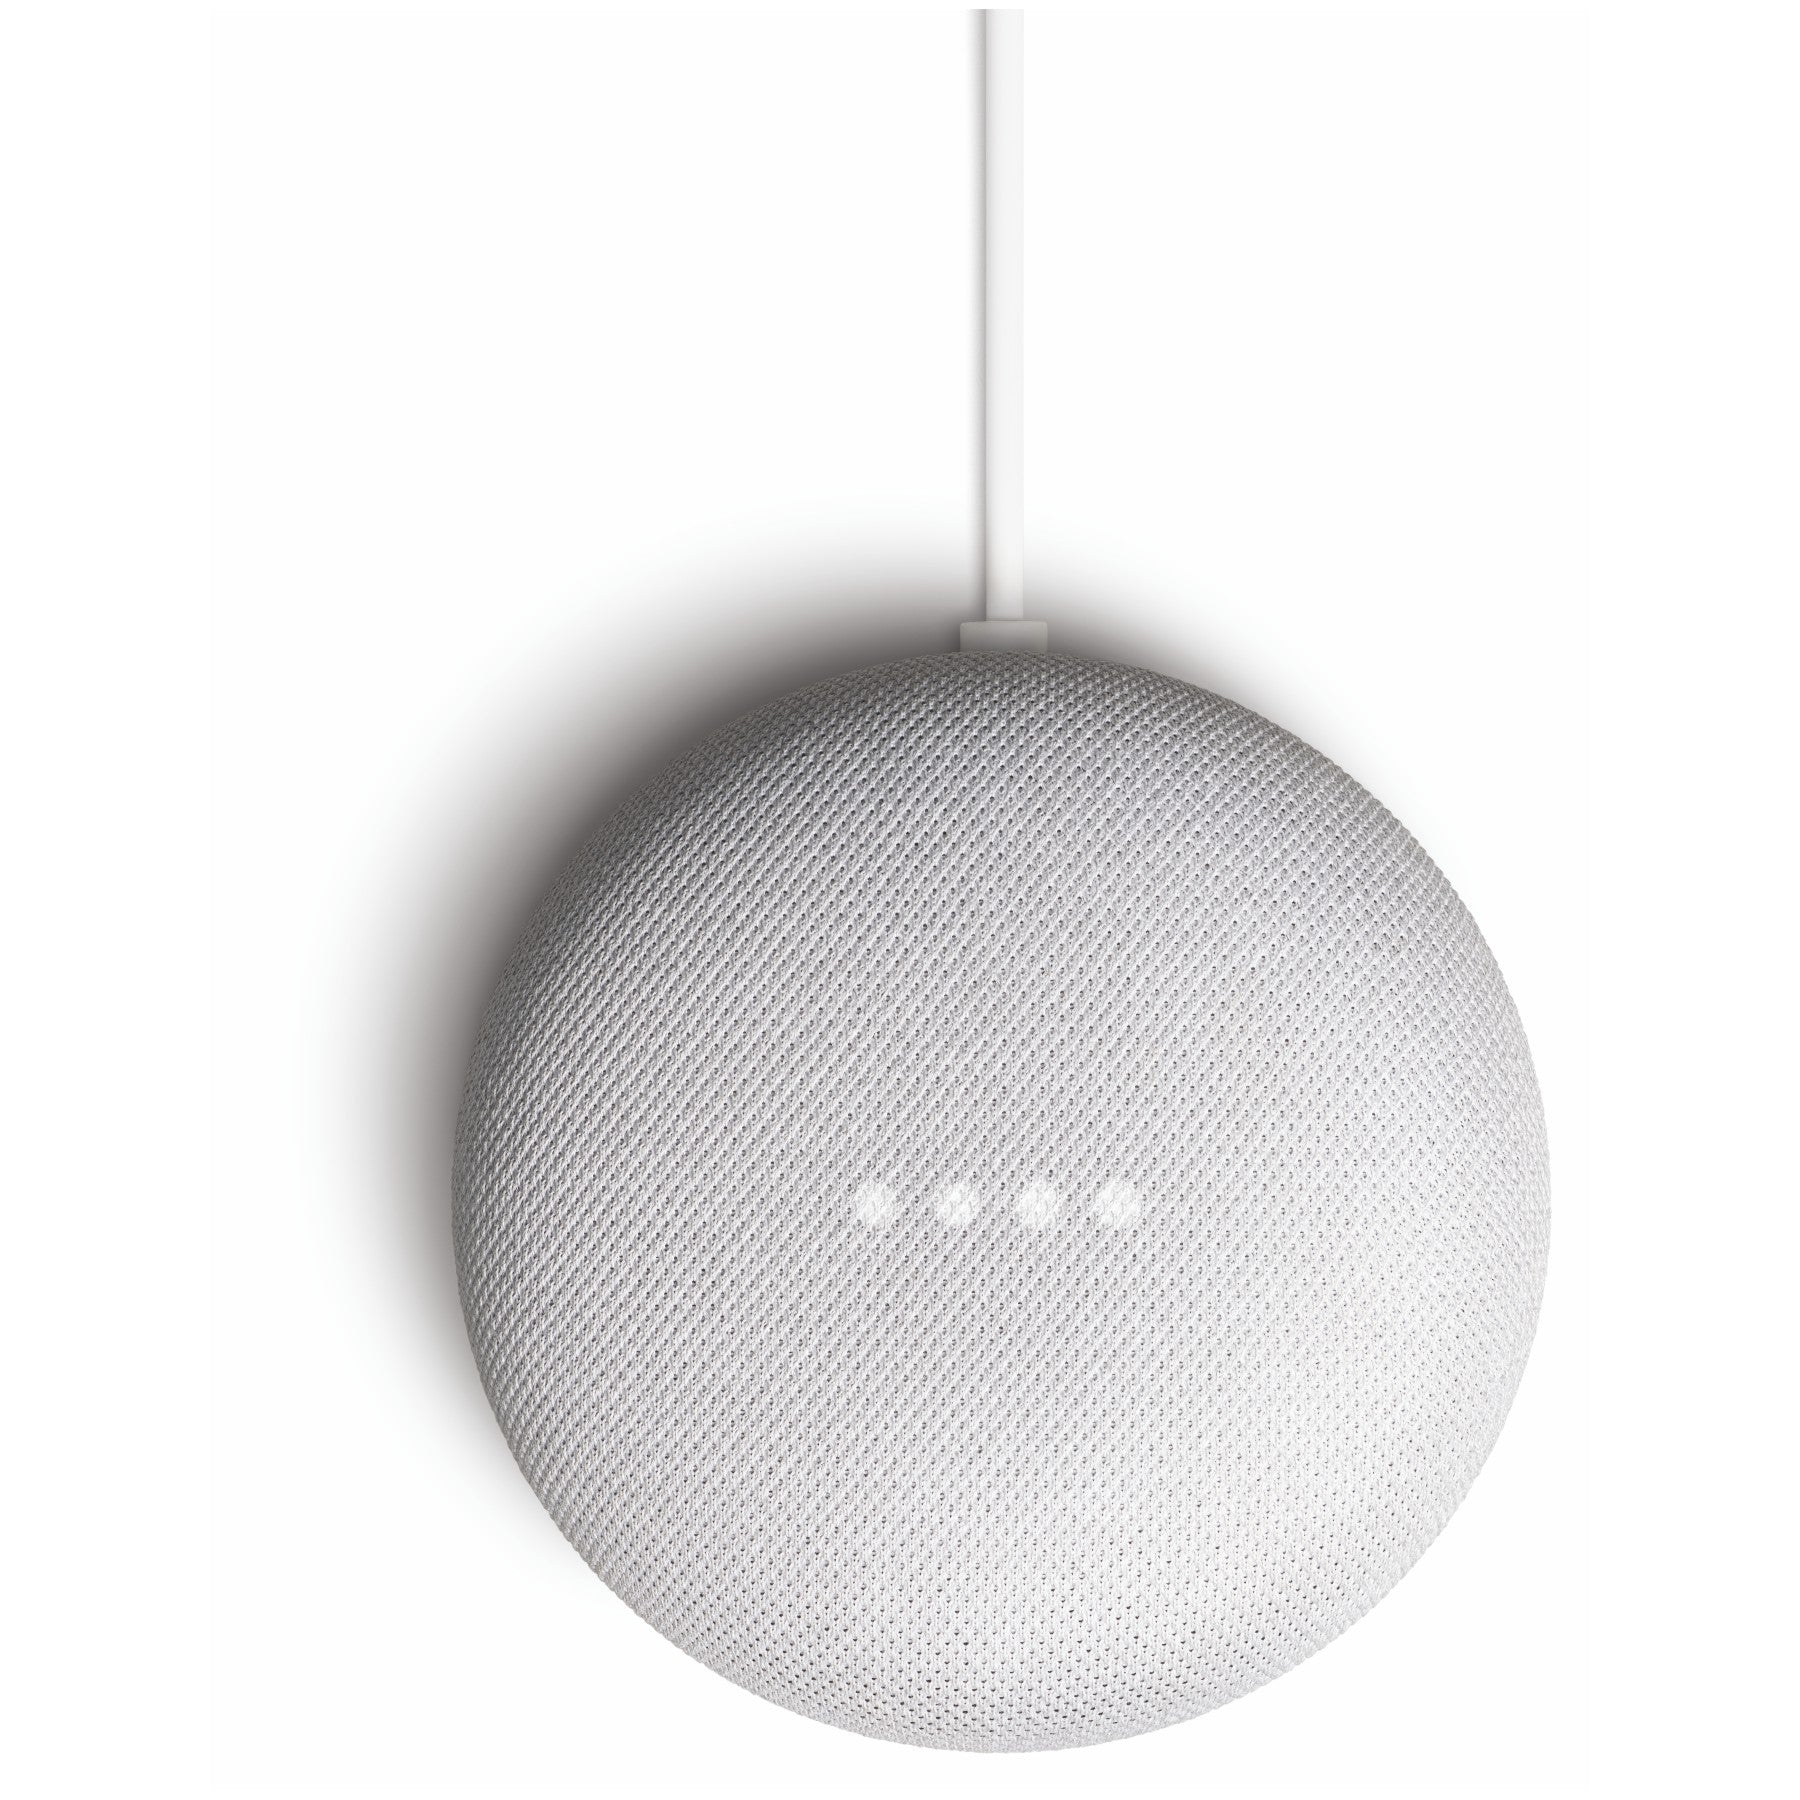 Google Nest Mini speaker – ShopAtSC